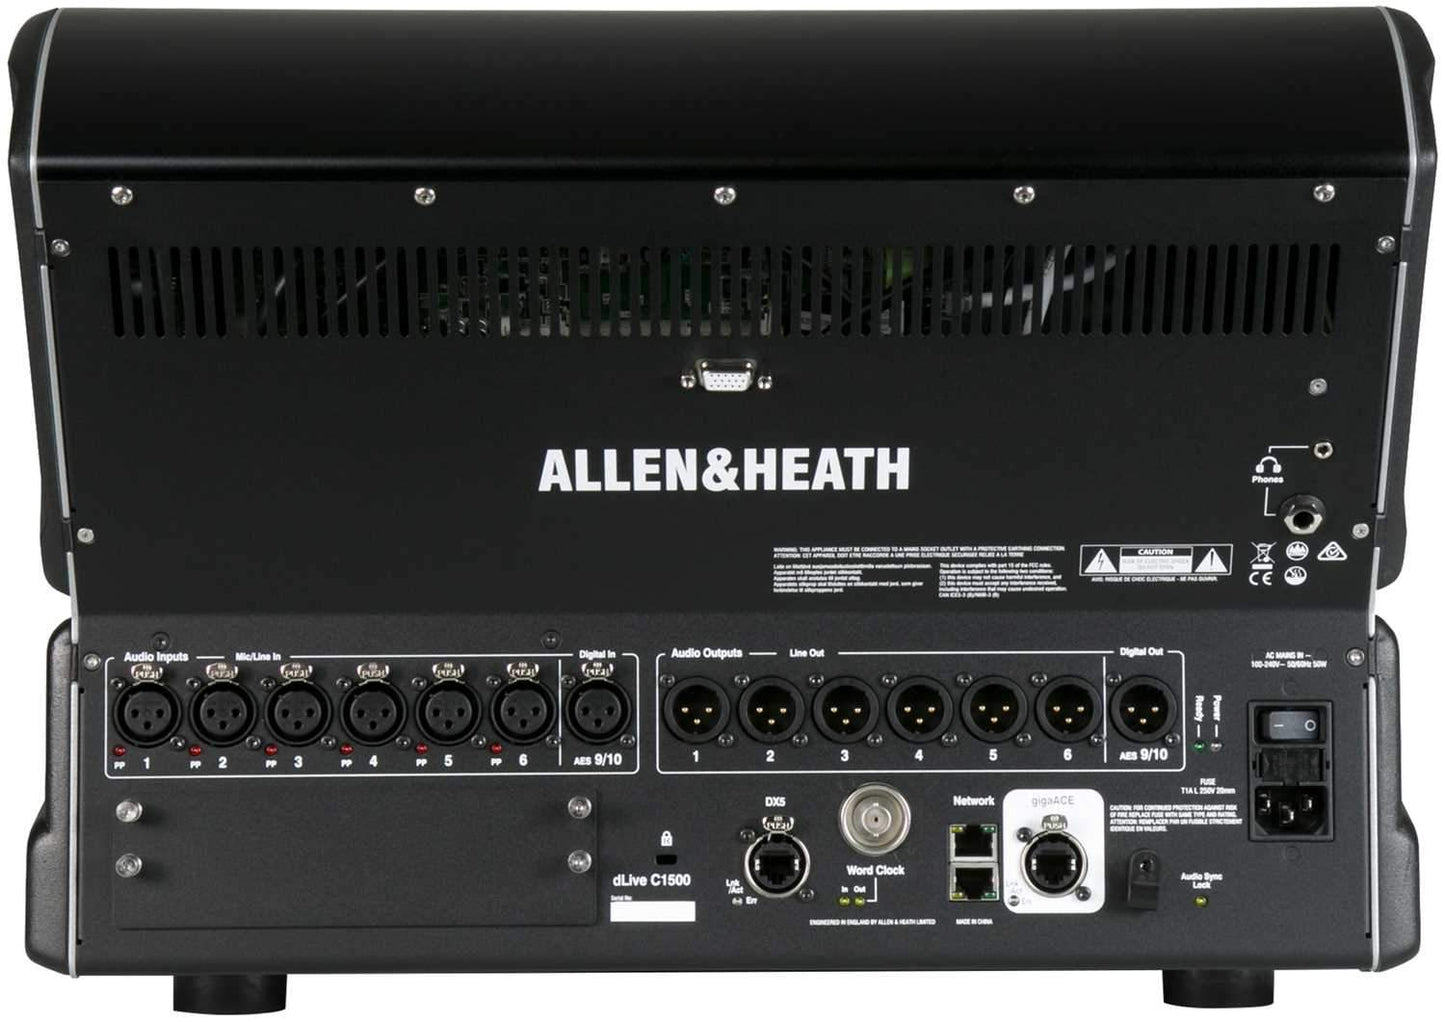 Allen & Heath DLC15-RK19 dLive C1500 Rack Kit - ProSound and Stage Lighting